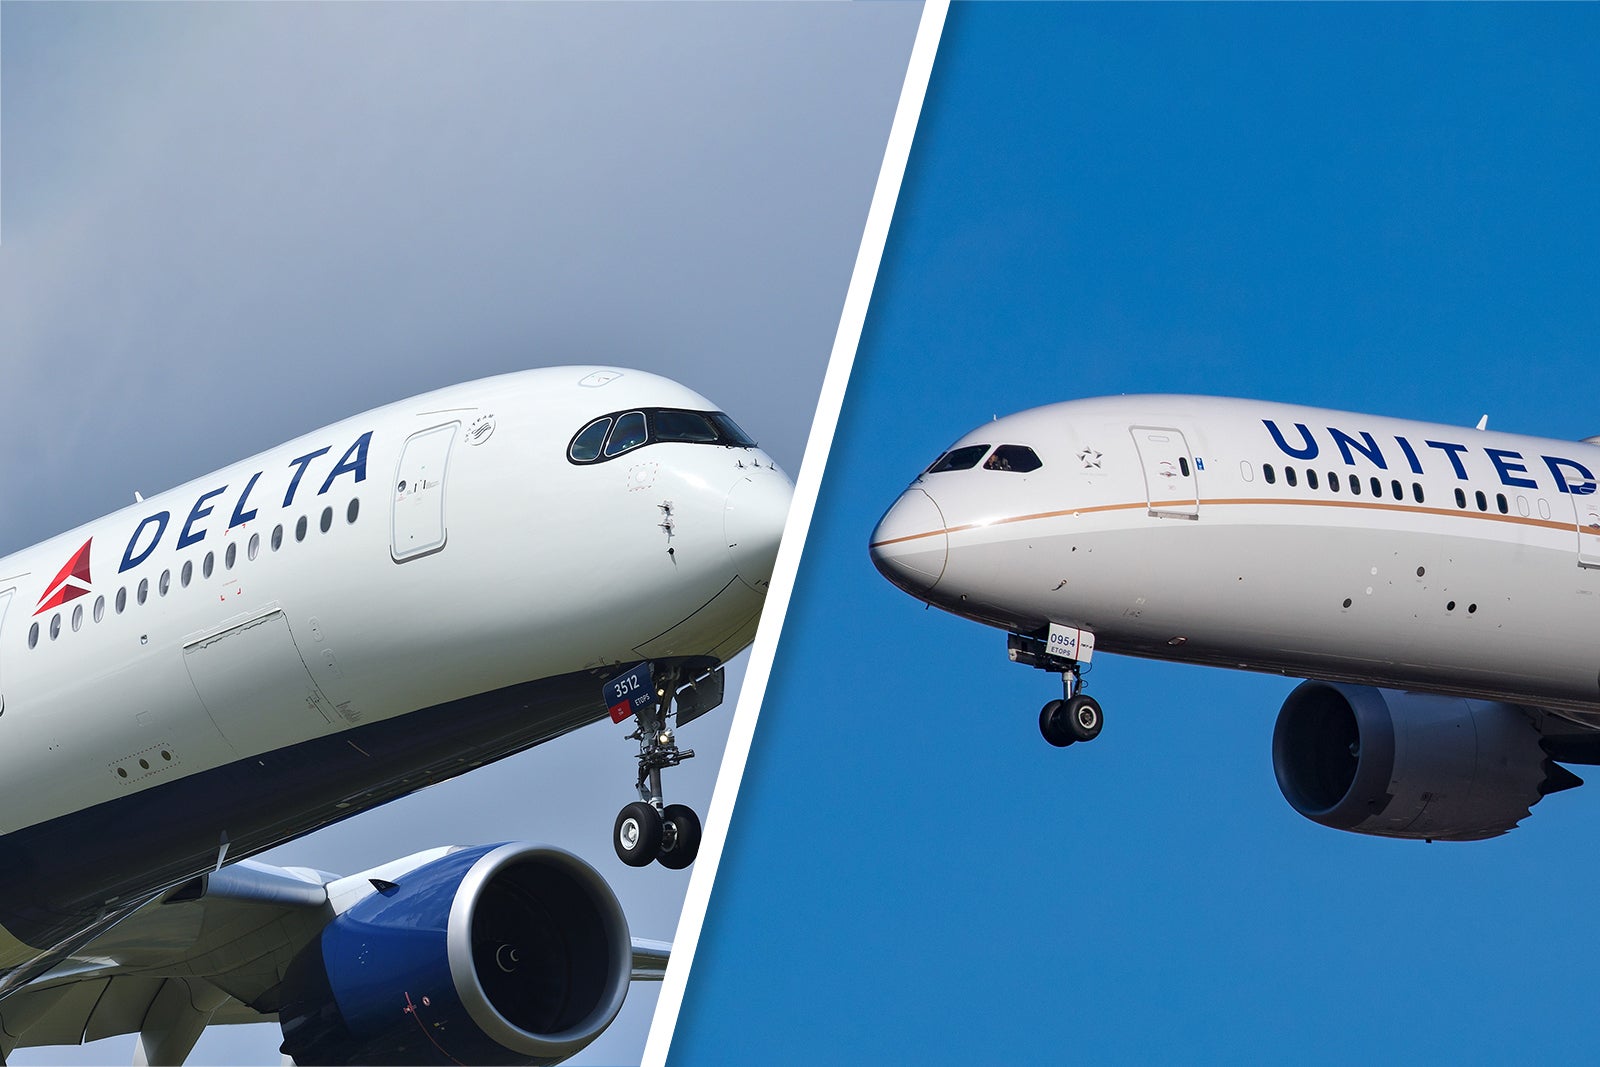 Delta A350 United 787-9 Comparison